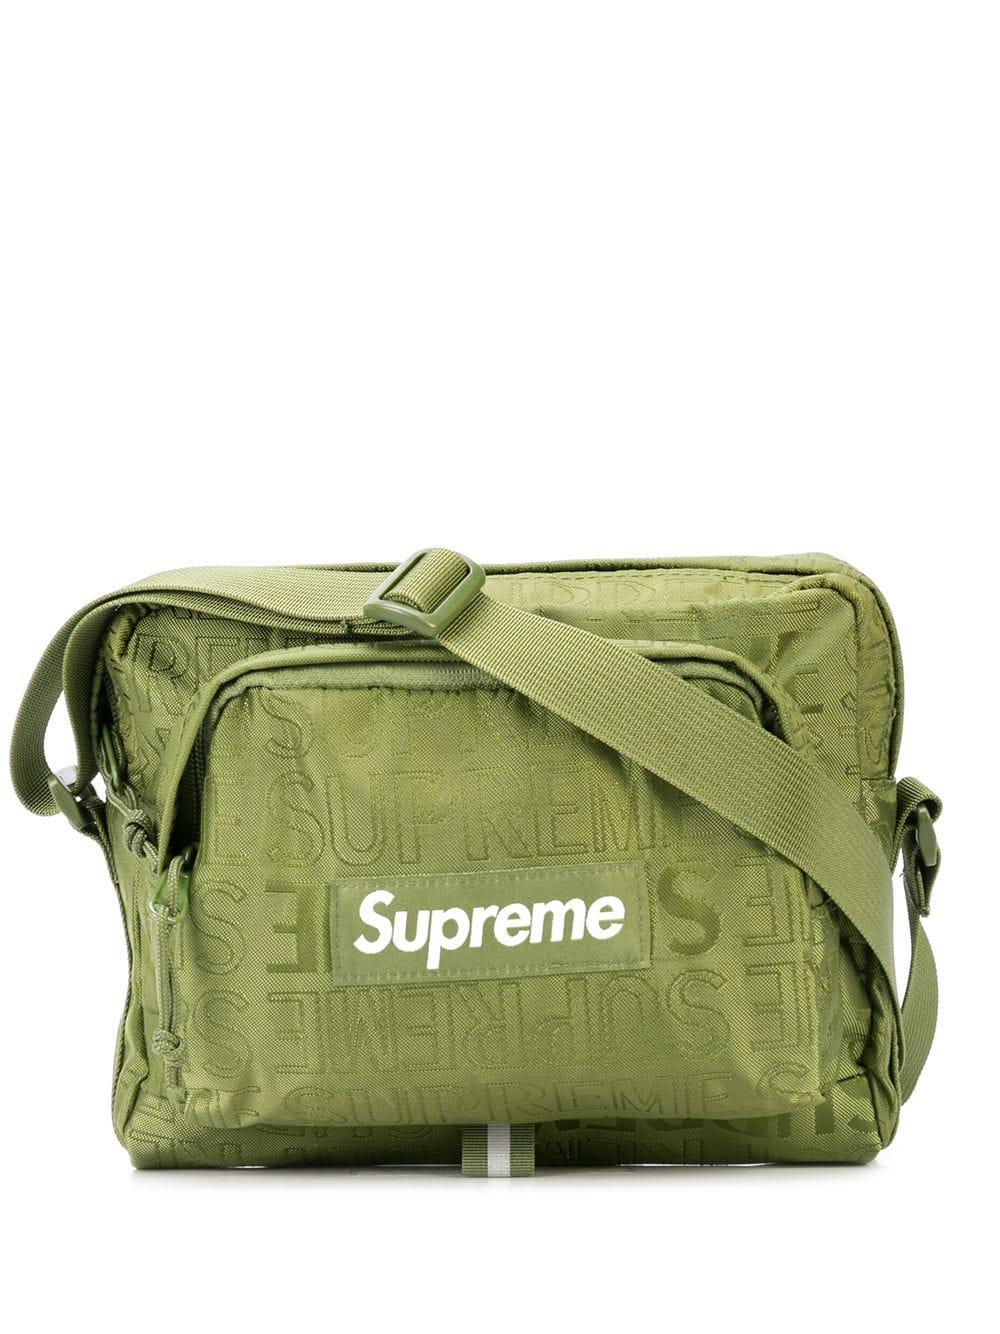 Supreme Rubber Logo Print Shoulder Bag in Green - Lyst